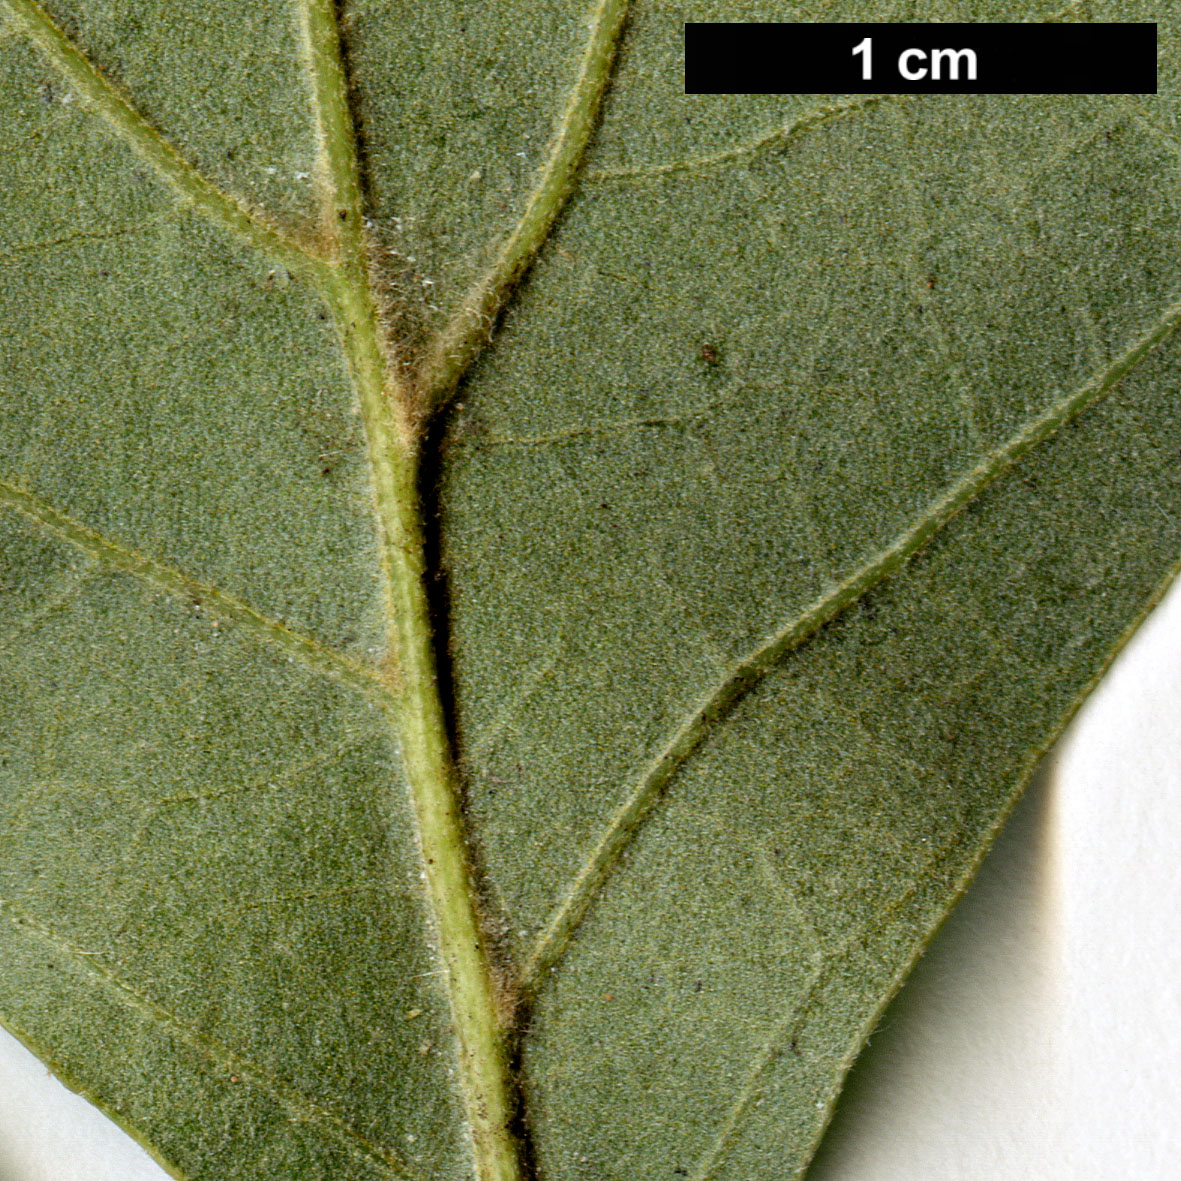 High resolution image: Family: Fagaceae - Genus: Quercus - Taxon: ×brittonii (Q.ilicifolia × Q.marilandica)